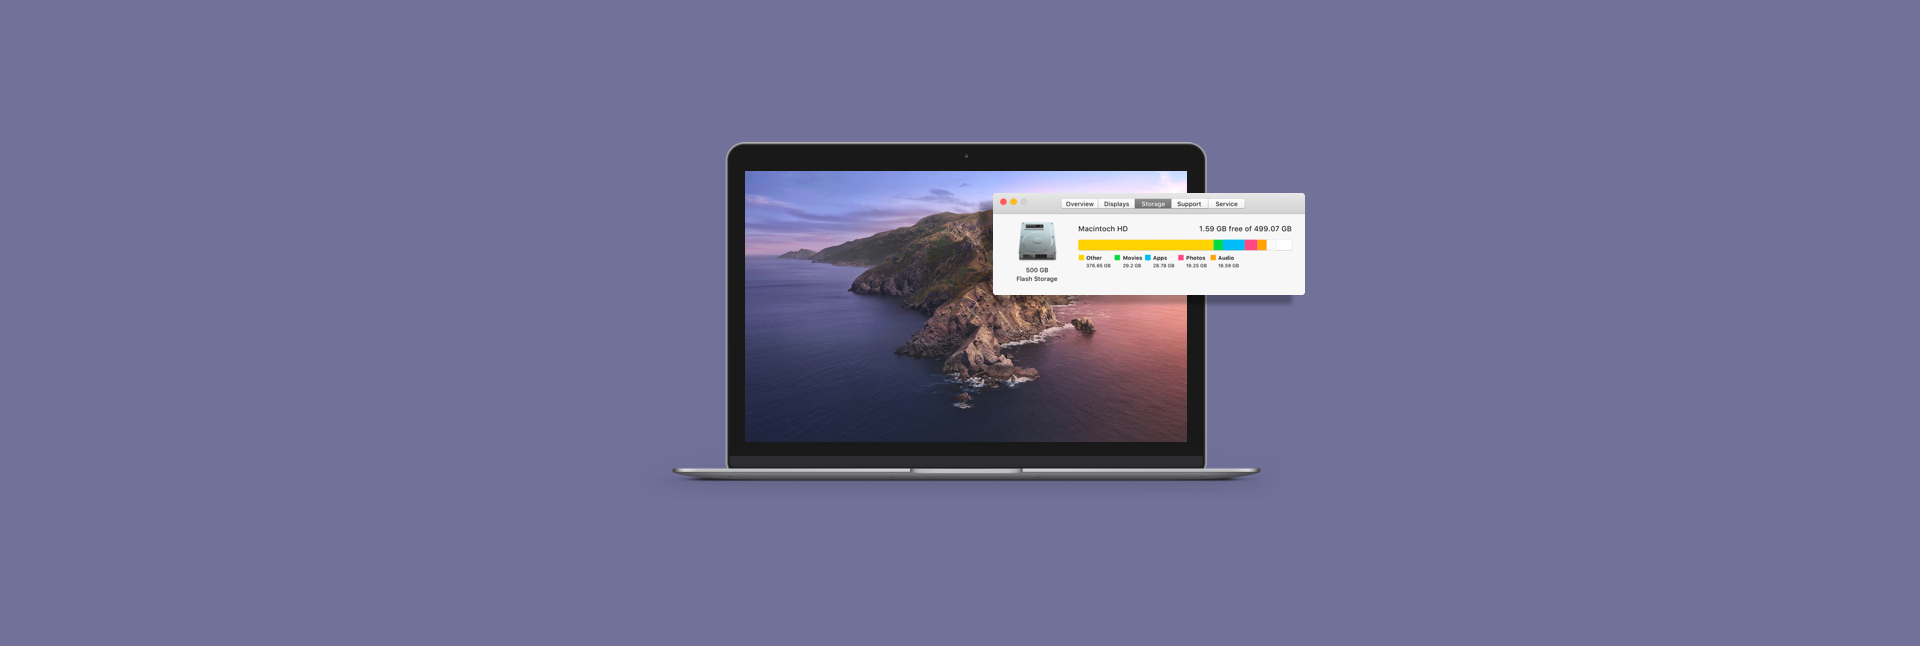 free disk space on macbook air